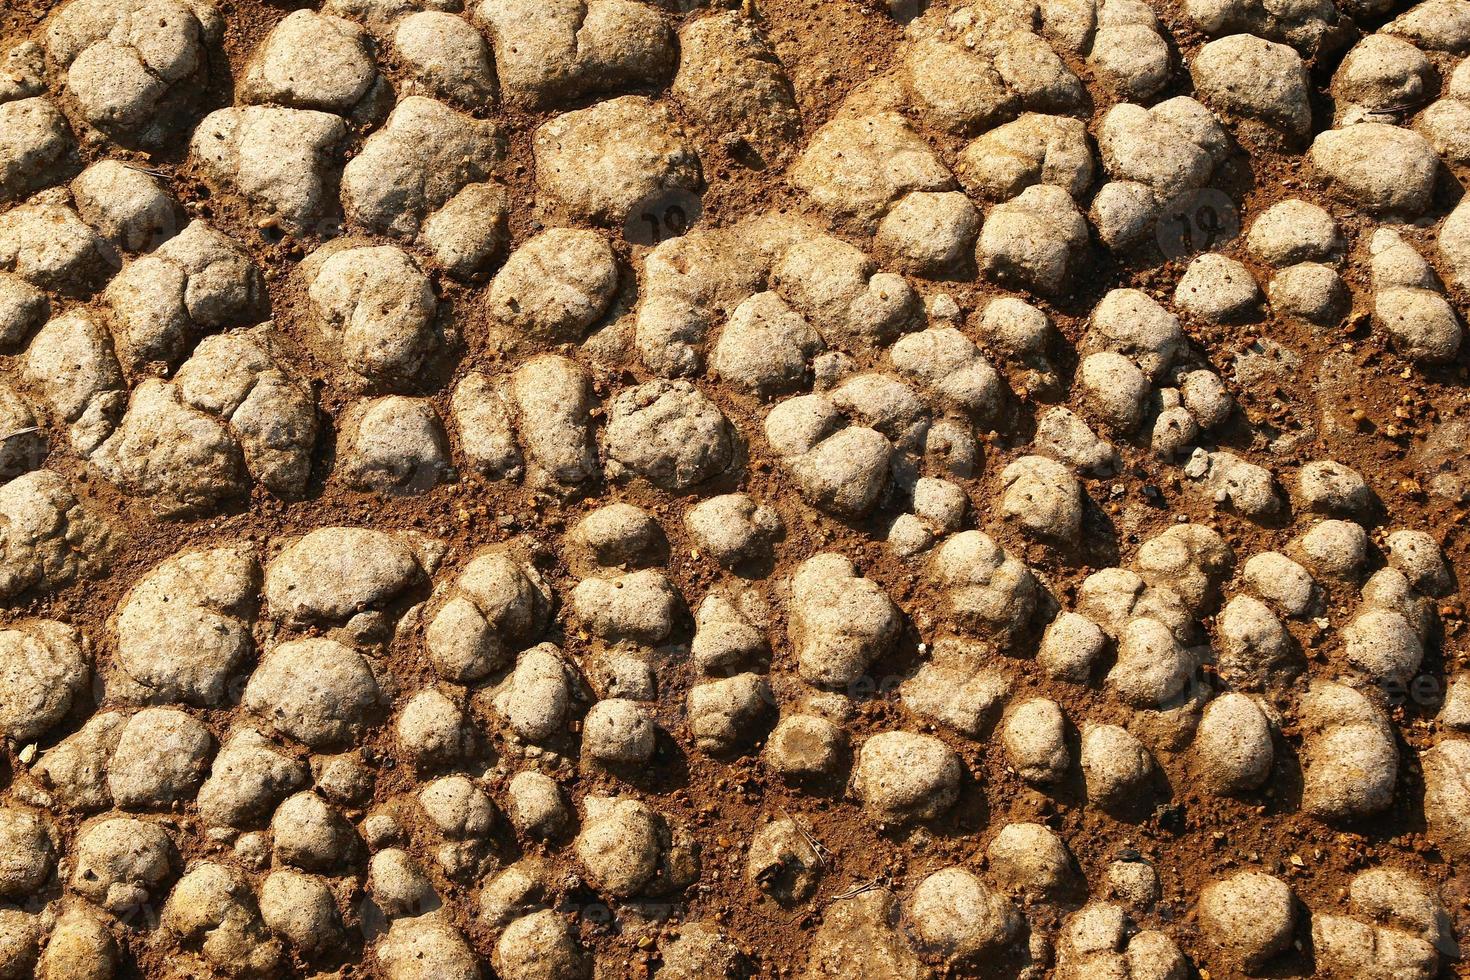 sol pierreux brun fissuré sec, vue de dessus. photo